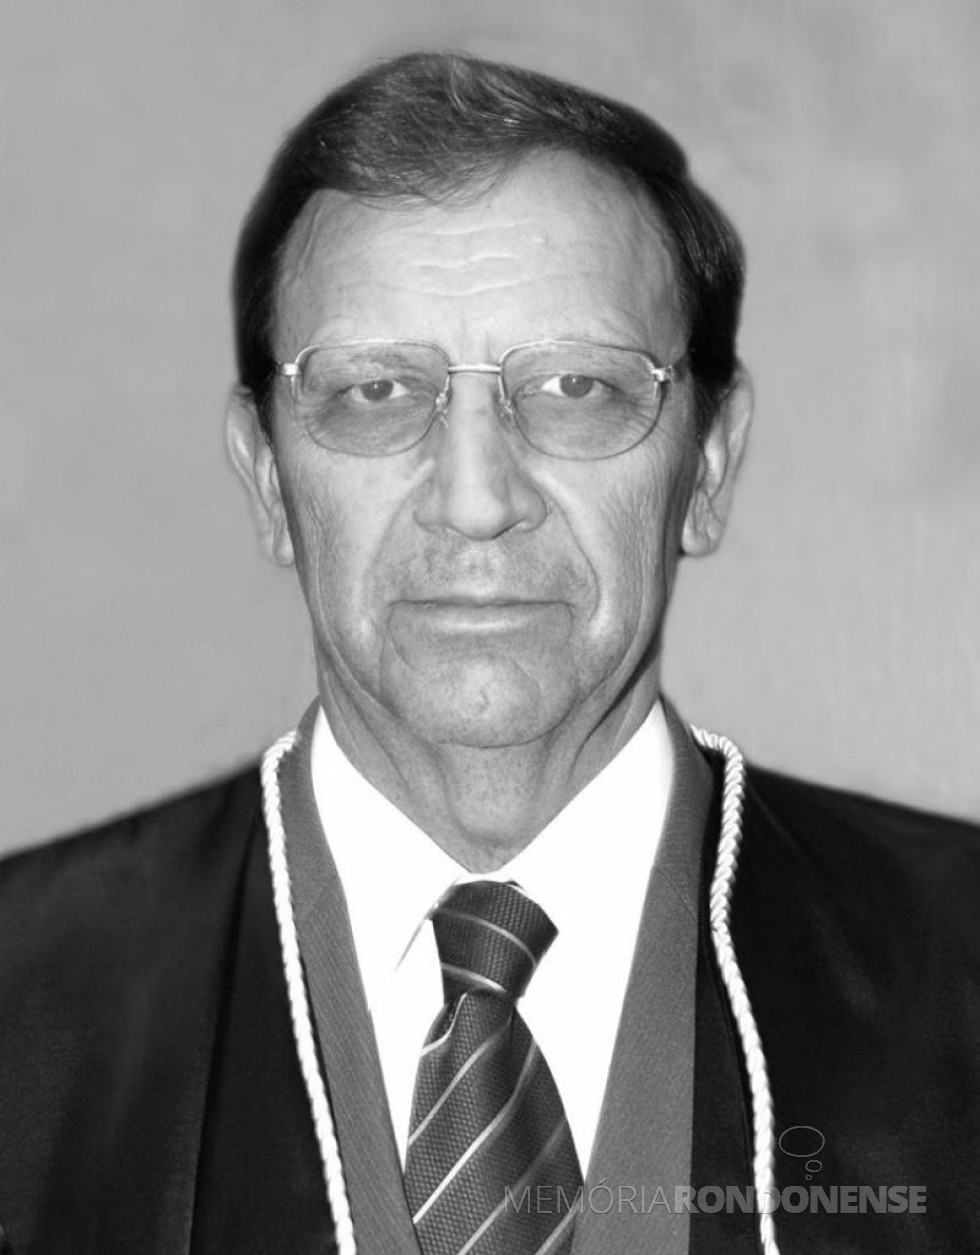 || Juiz João Kopytowski, depois  desembargador da Tribunal de Justiça do Estado do Paraná.
Imagem: Acervo TJ-PR - FOTO 7 - 